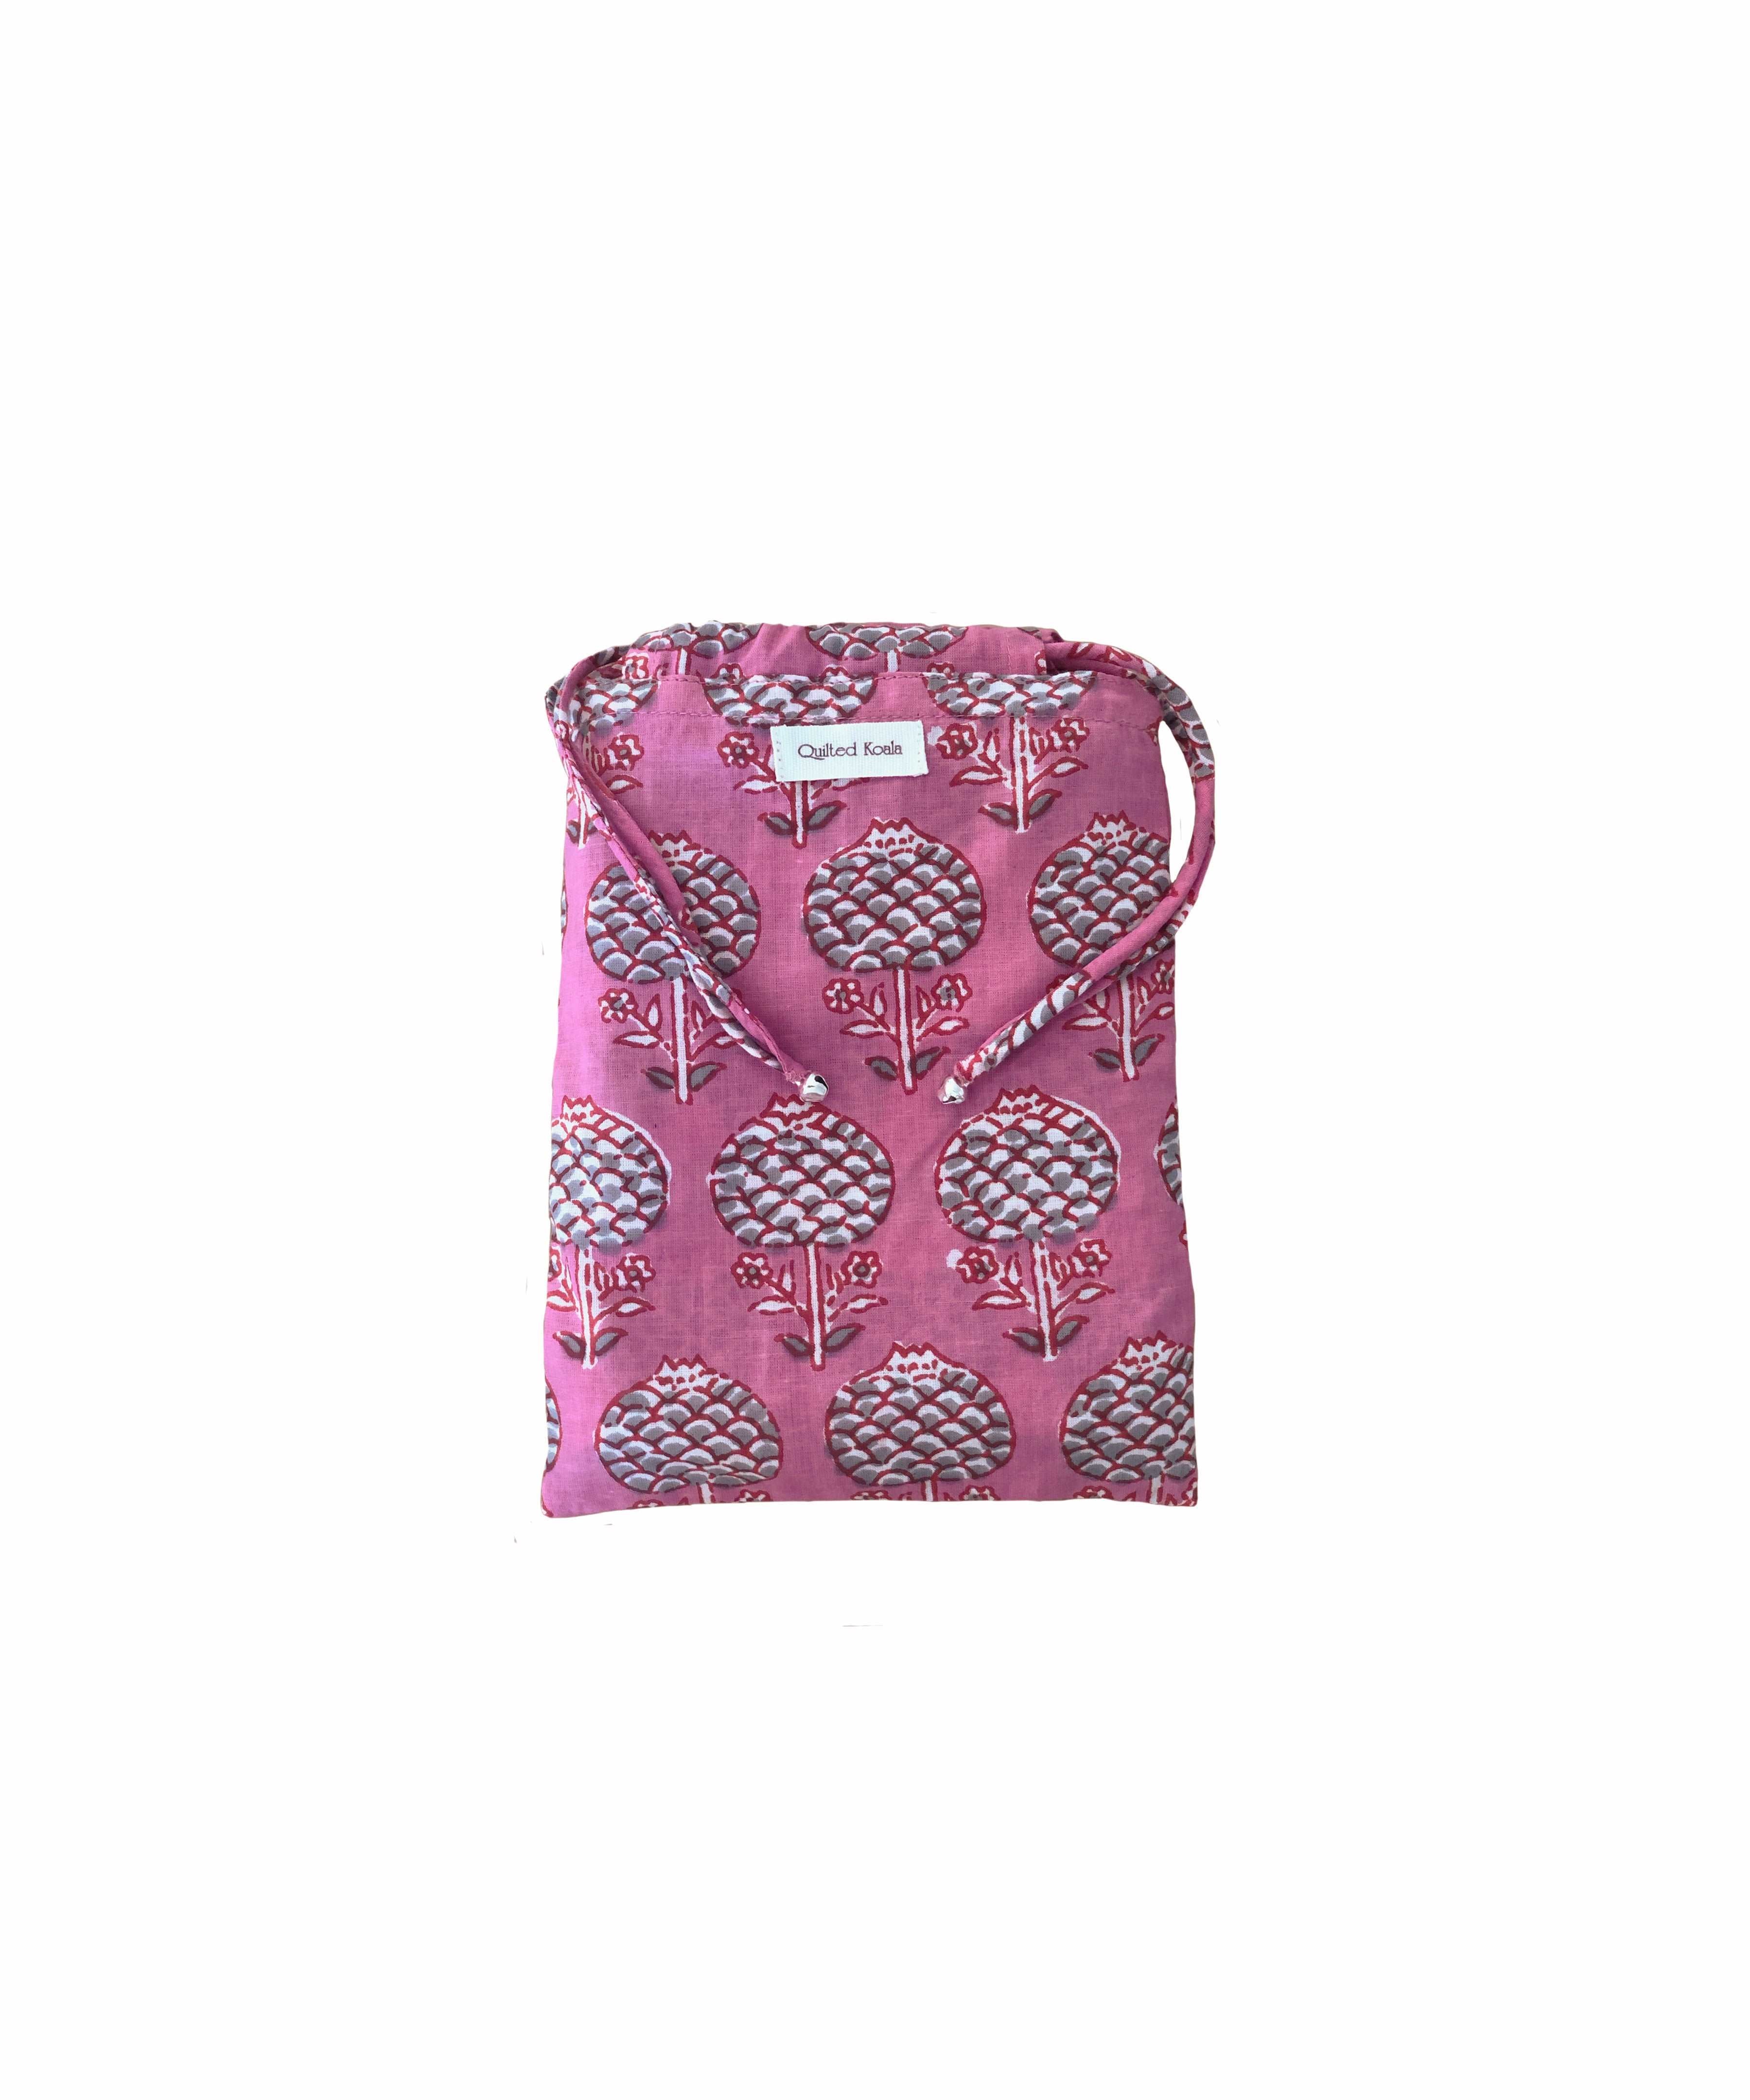 Boho Market Bag - Pink  Just $8 - Quilted Koala